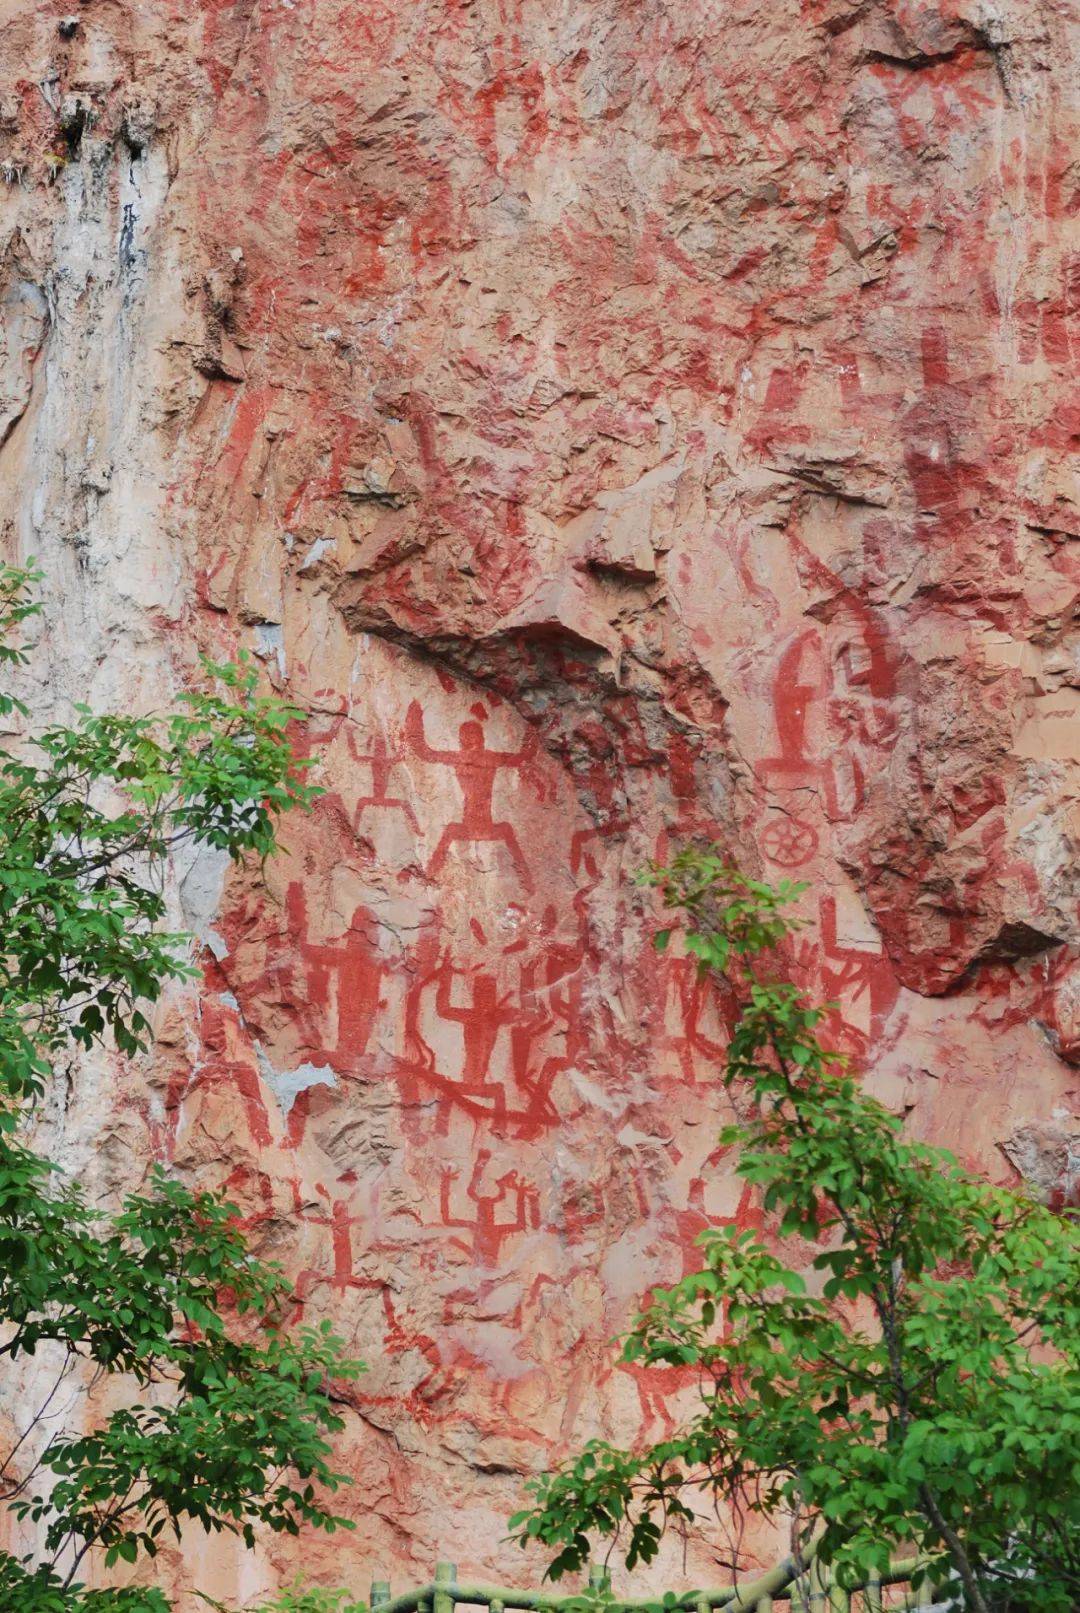 最早出现在画卷上的,就是花山岩画在场地中央缓缓展开中华民族五千年